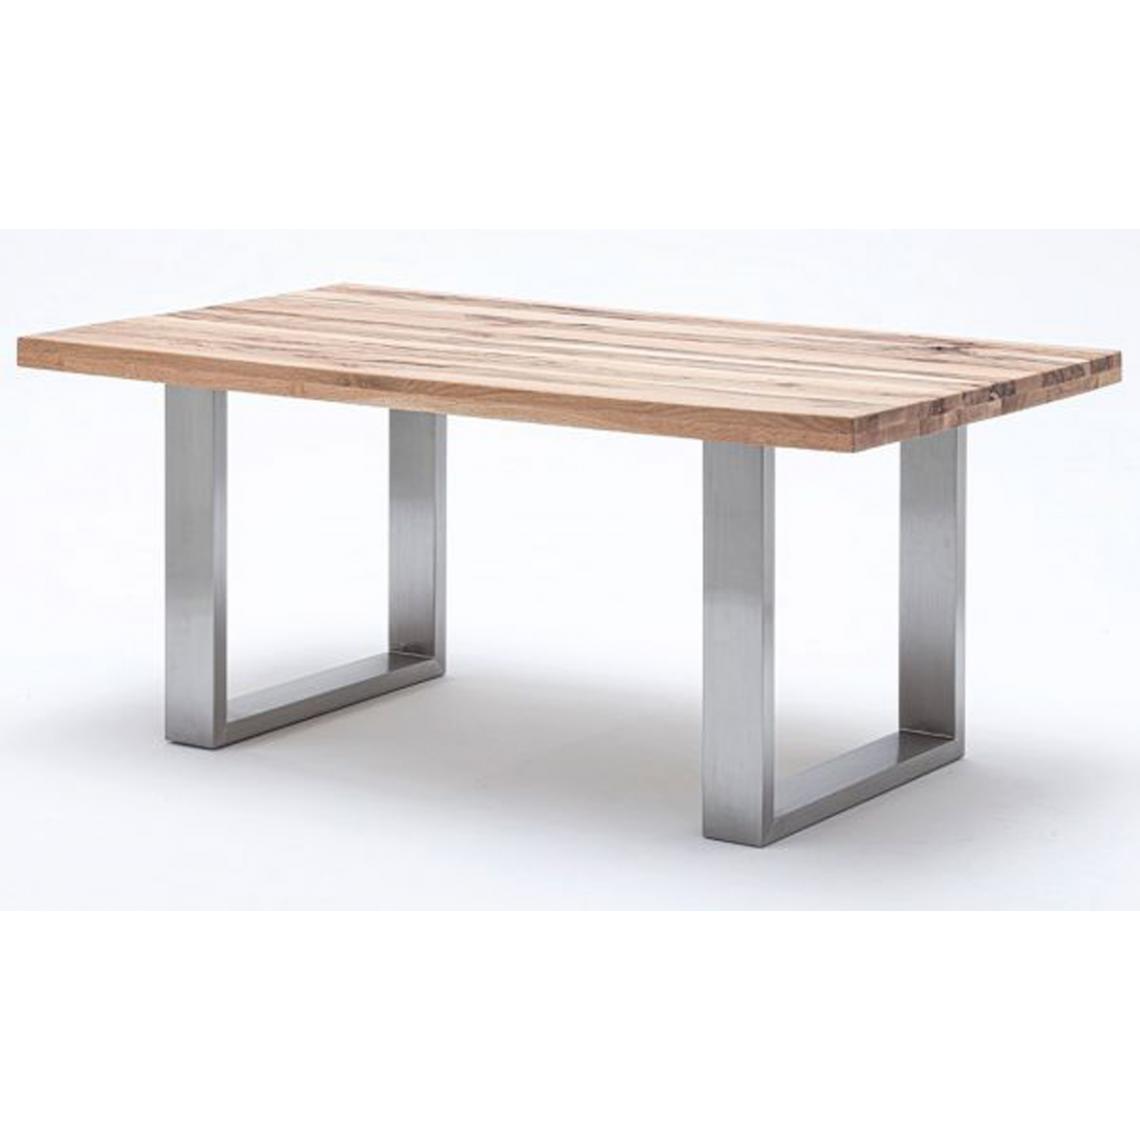 Pegane - Table à manger en chêne sauvage,laqué mat massif - L.220 x H.76 x P.100 cm -PEGANE- - Tables à manger